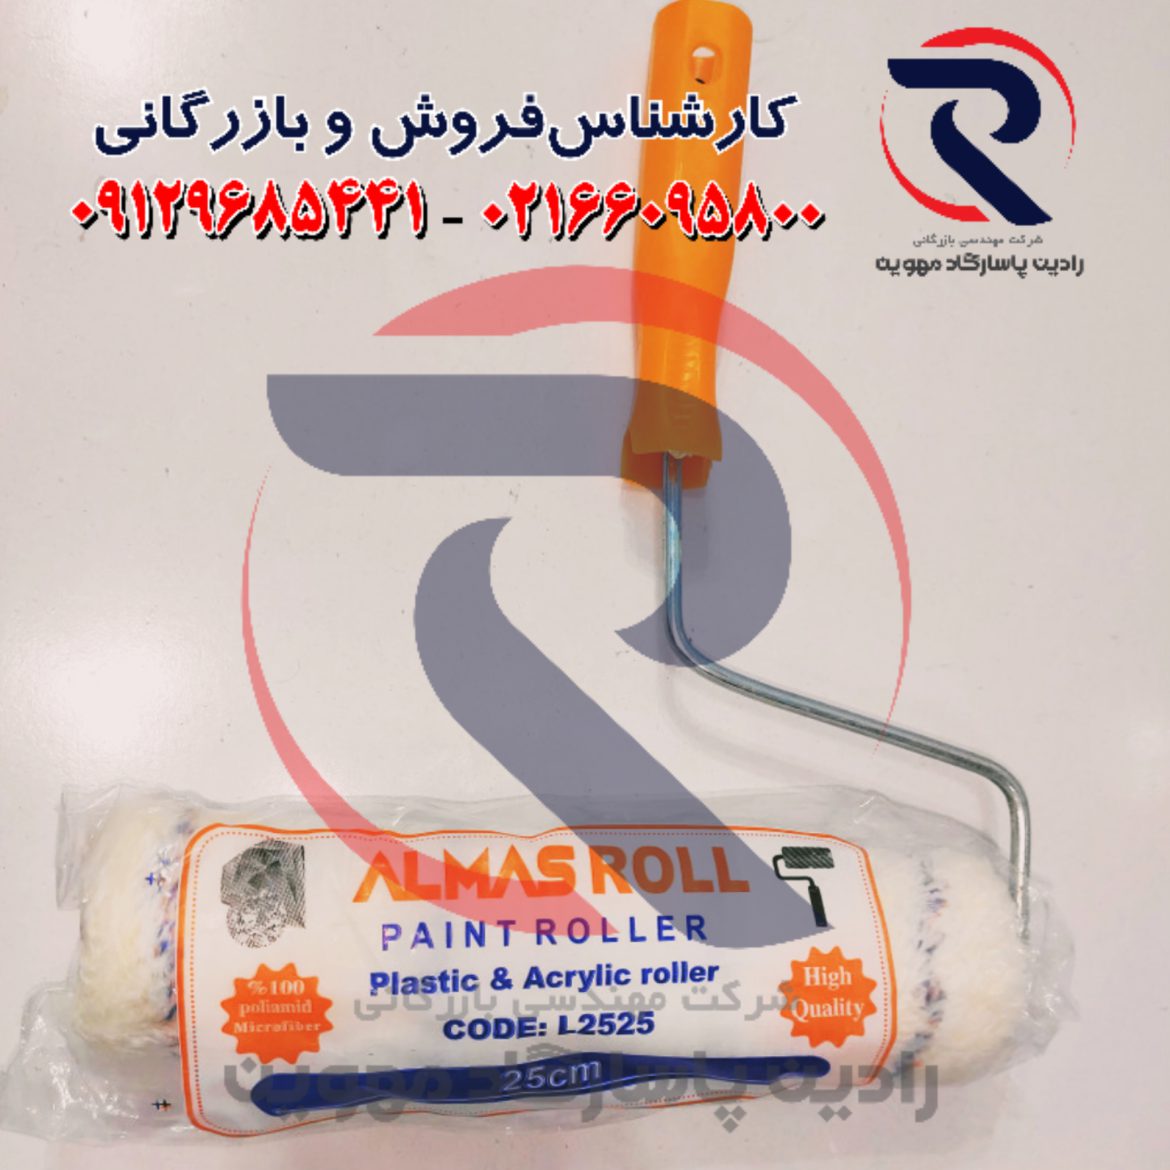 نمایندگی پخش غلطک الماس رول در تهران